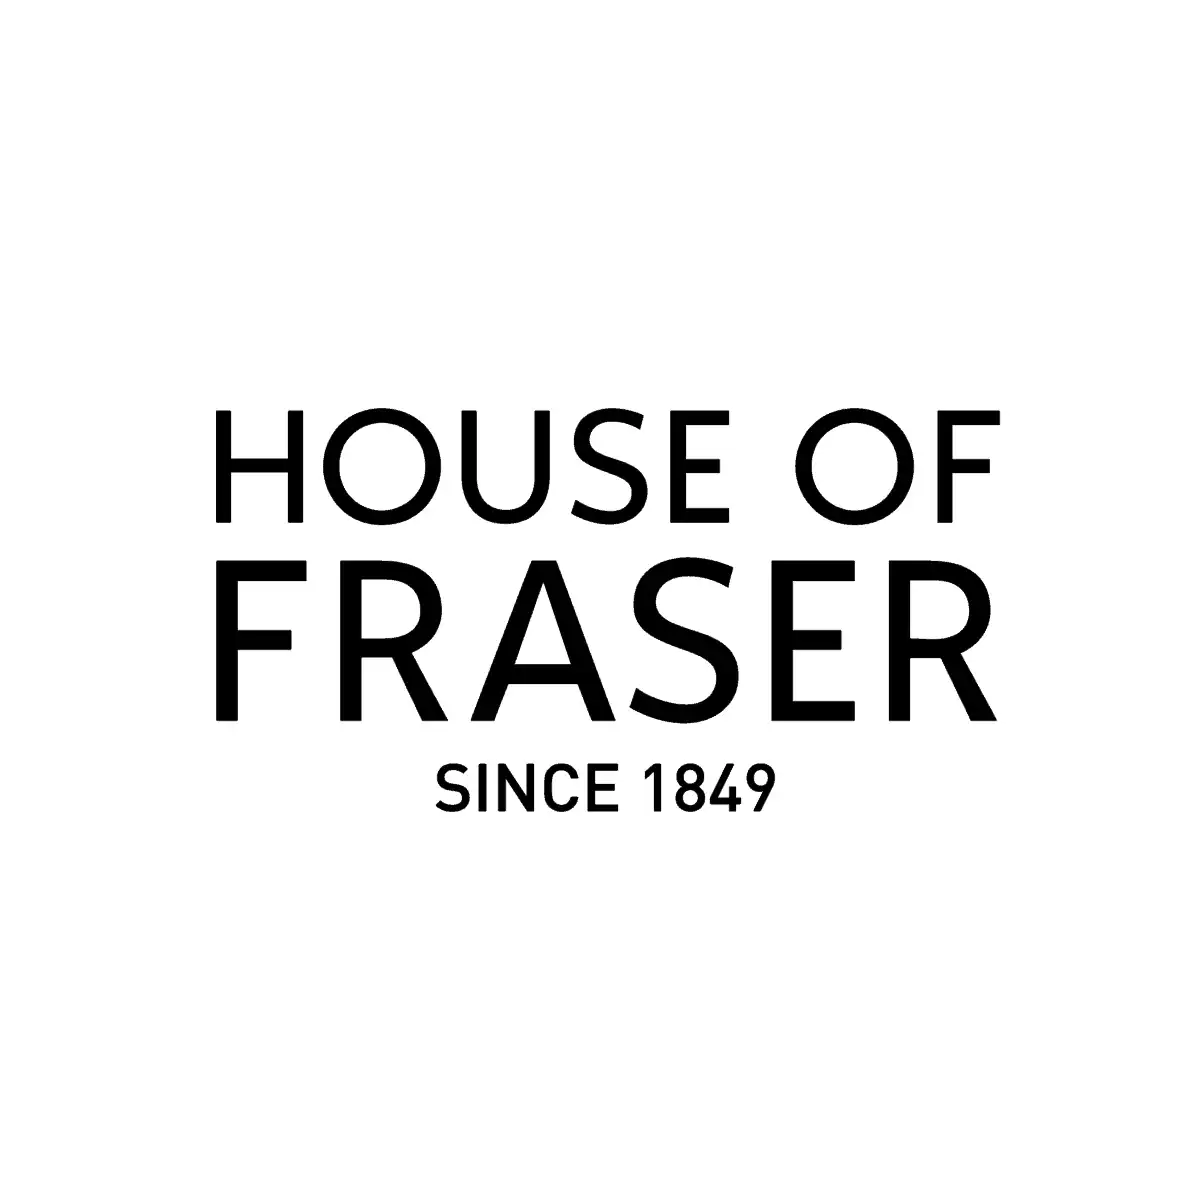 هاوس آف فریزر (House of Fraser)